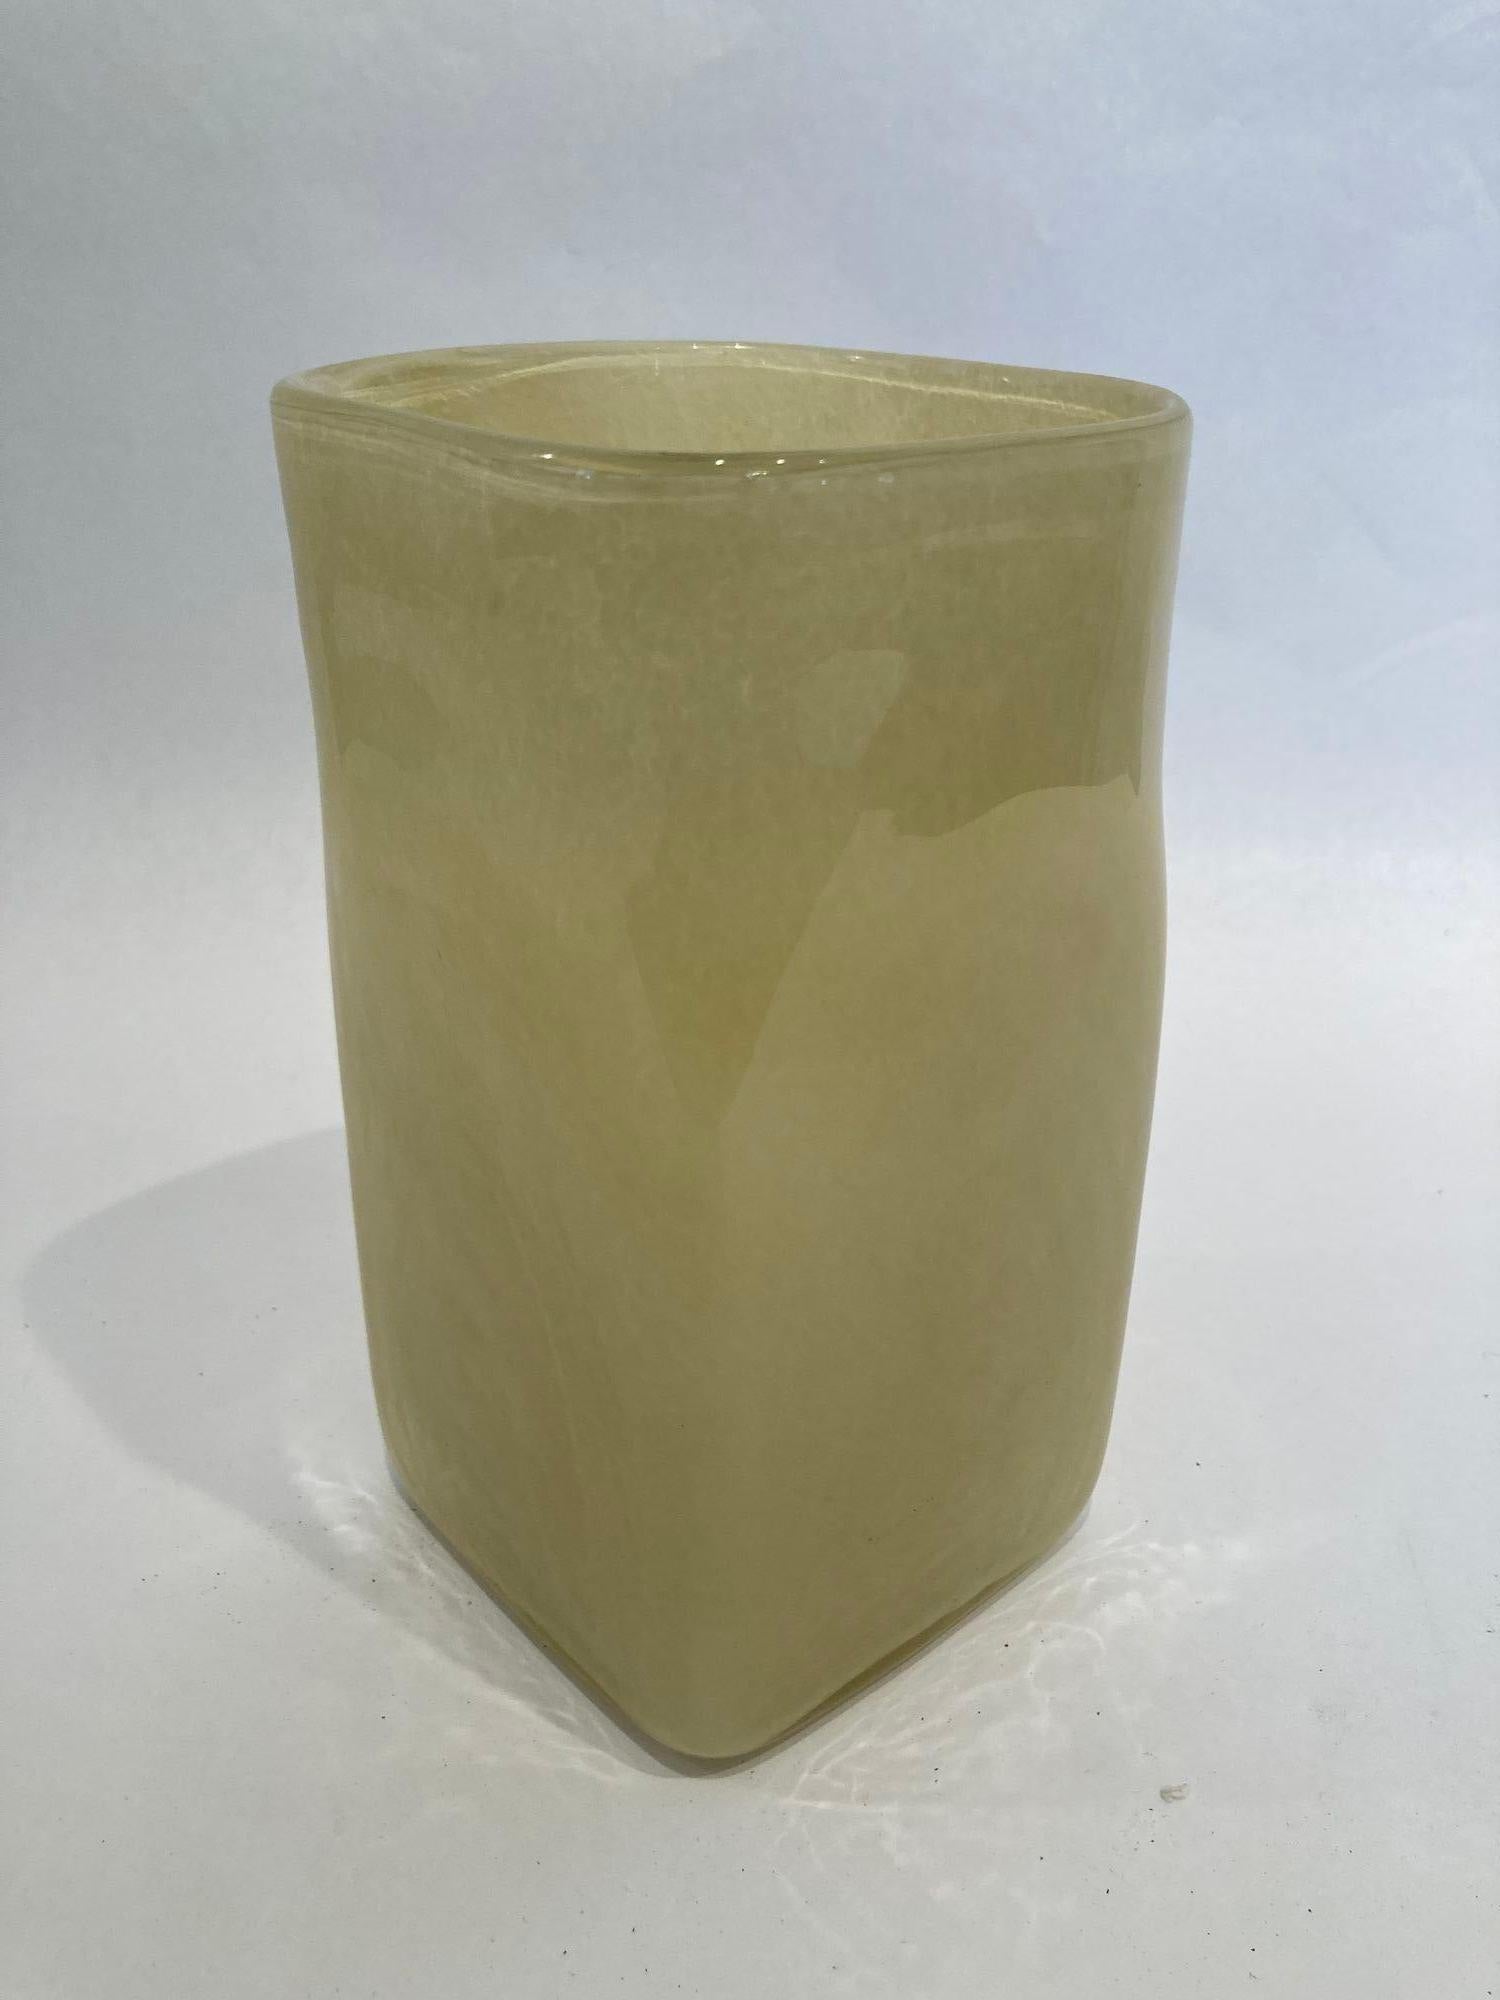 Handgefertigte quadratische beigefarbene Blumenglasvase im Stil von Kosta Boda.
Nach dem Vorbild des Designers Bertil Vallien Art Glass Vase, um 1980 für Kosta Boda.
Die schwedische Kunstglasvase Kosta Boda hat einen beigen Glaskörper.
Quadratische